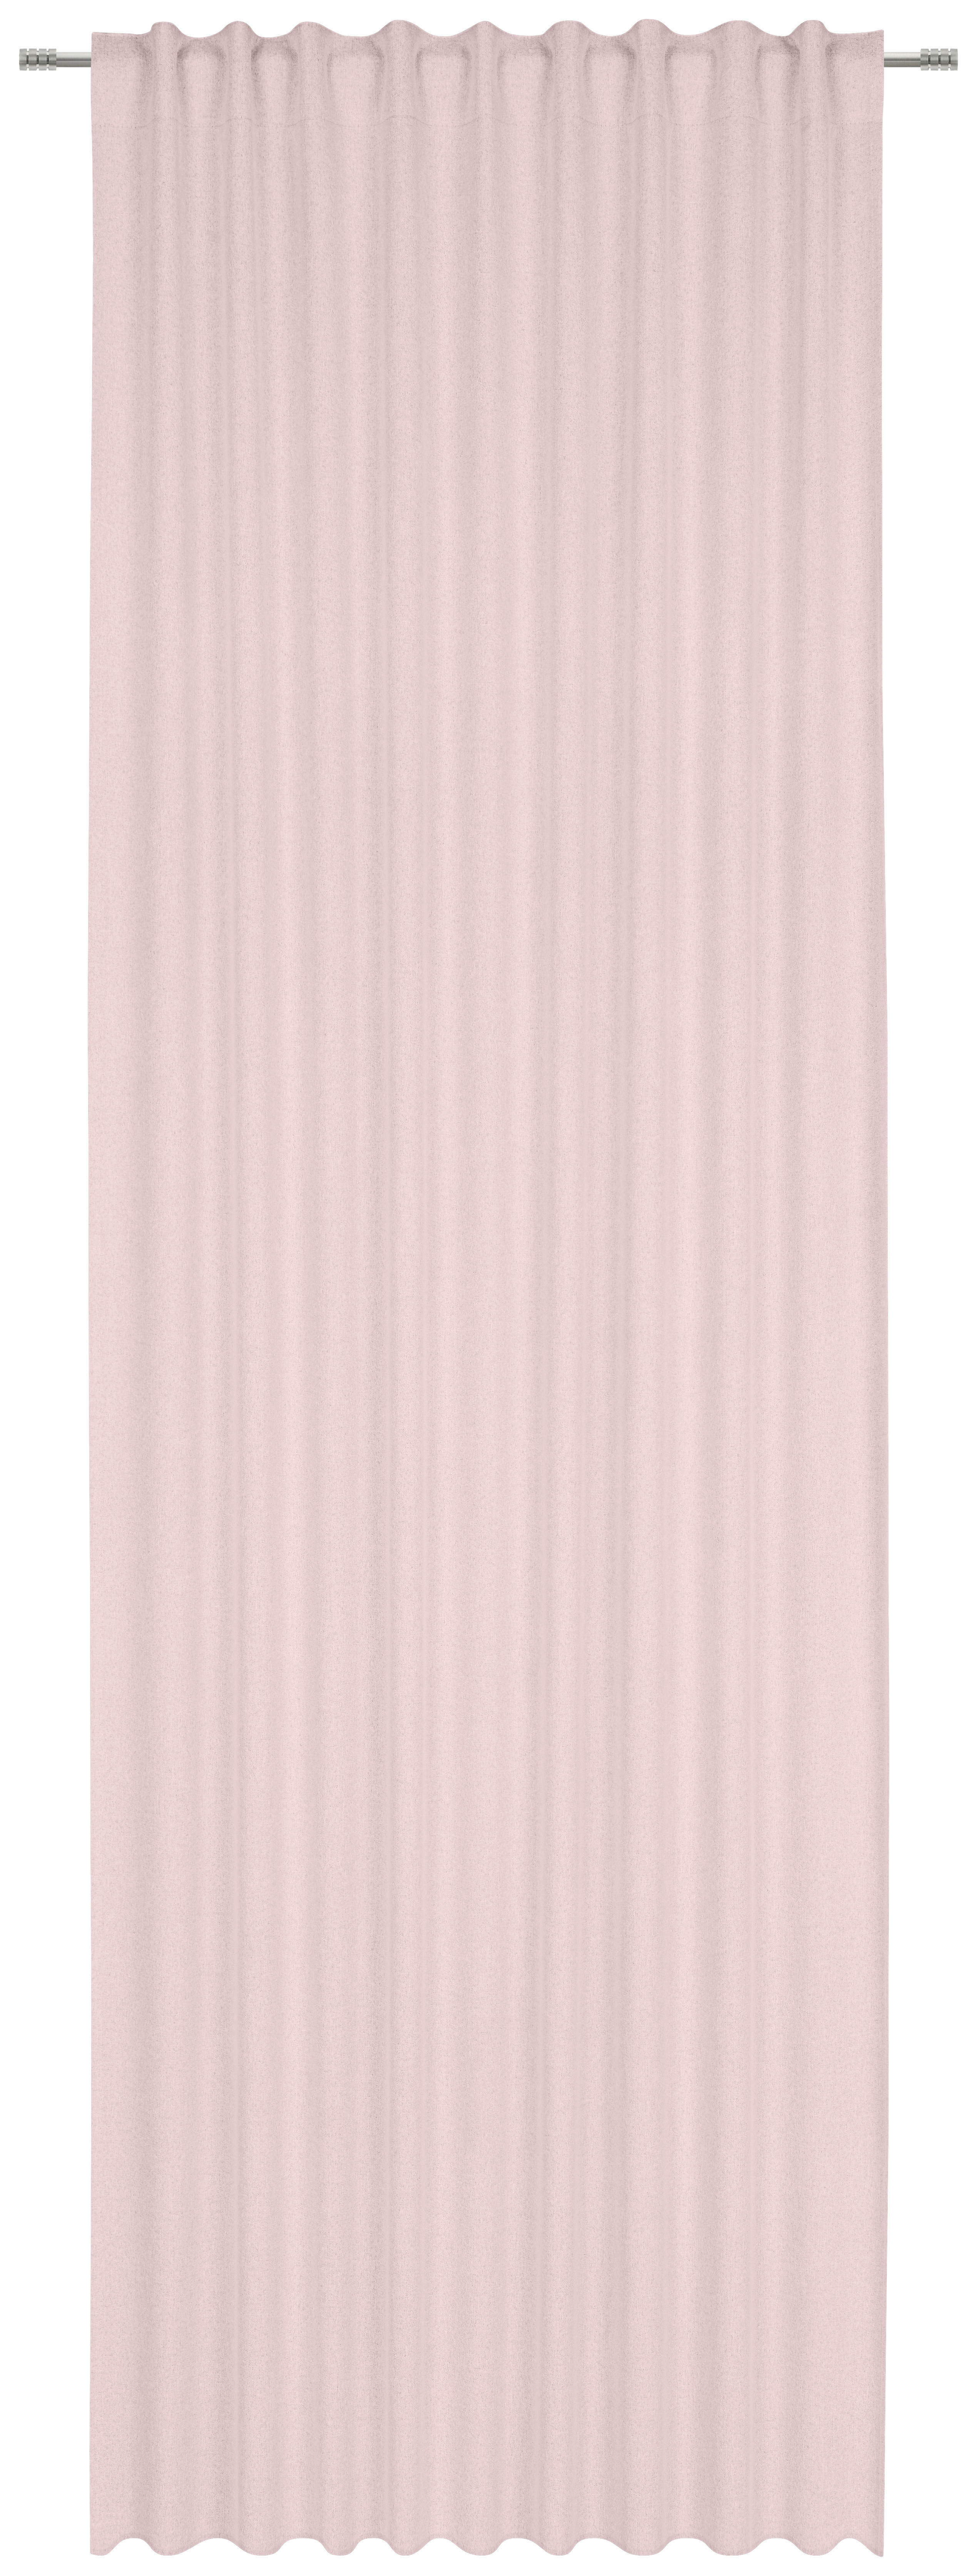 FERTIGVORHANG DUNCAN black-out (lichtundurchlässig) 135/300 cm   - Rosa, KONVENTIONELL, Textil (135/300cm) - Esposa